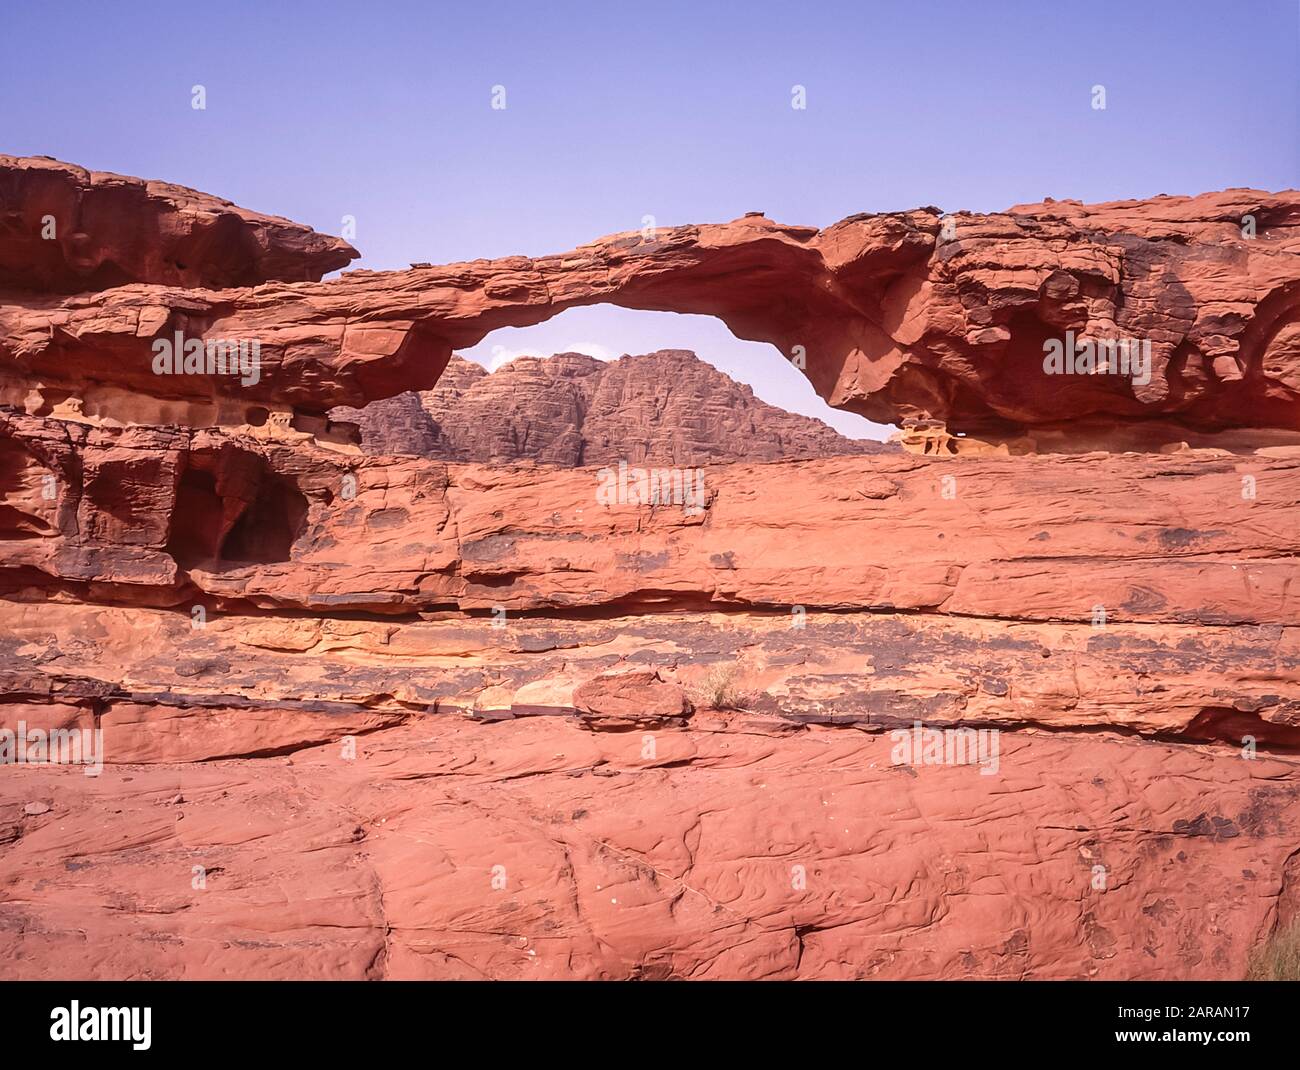 Jordanie. Des paysages de montagne désertiques colorés à l'arche rocheuse d'Al Kharza au site classé au patrimoine mondial de l'UNESCO de Wadi Rum près du port d'Aqaba dans le sud de la Jordanie Banque D'Images